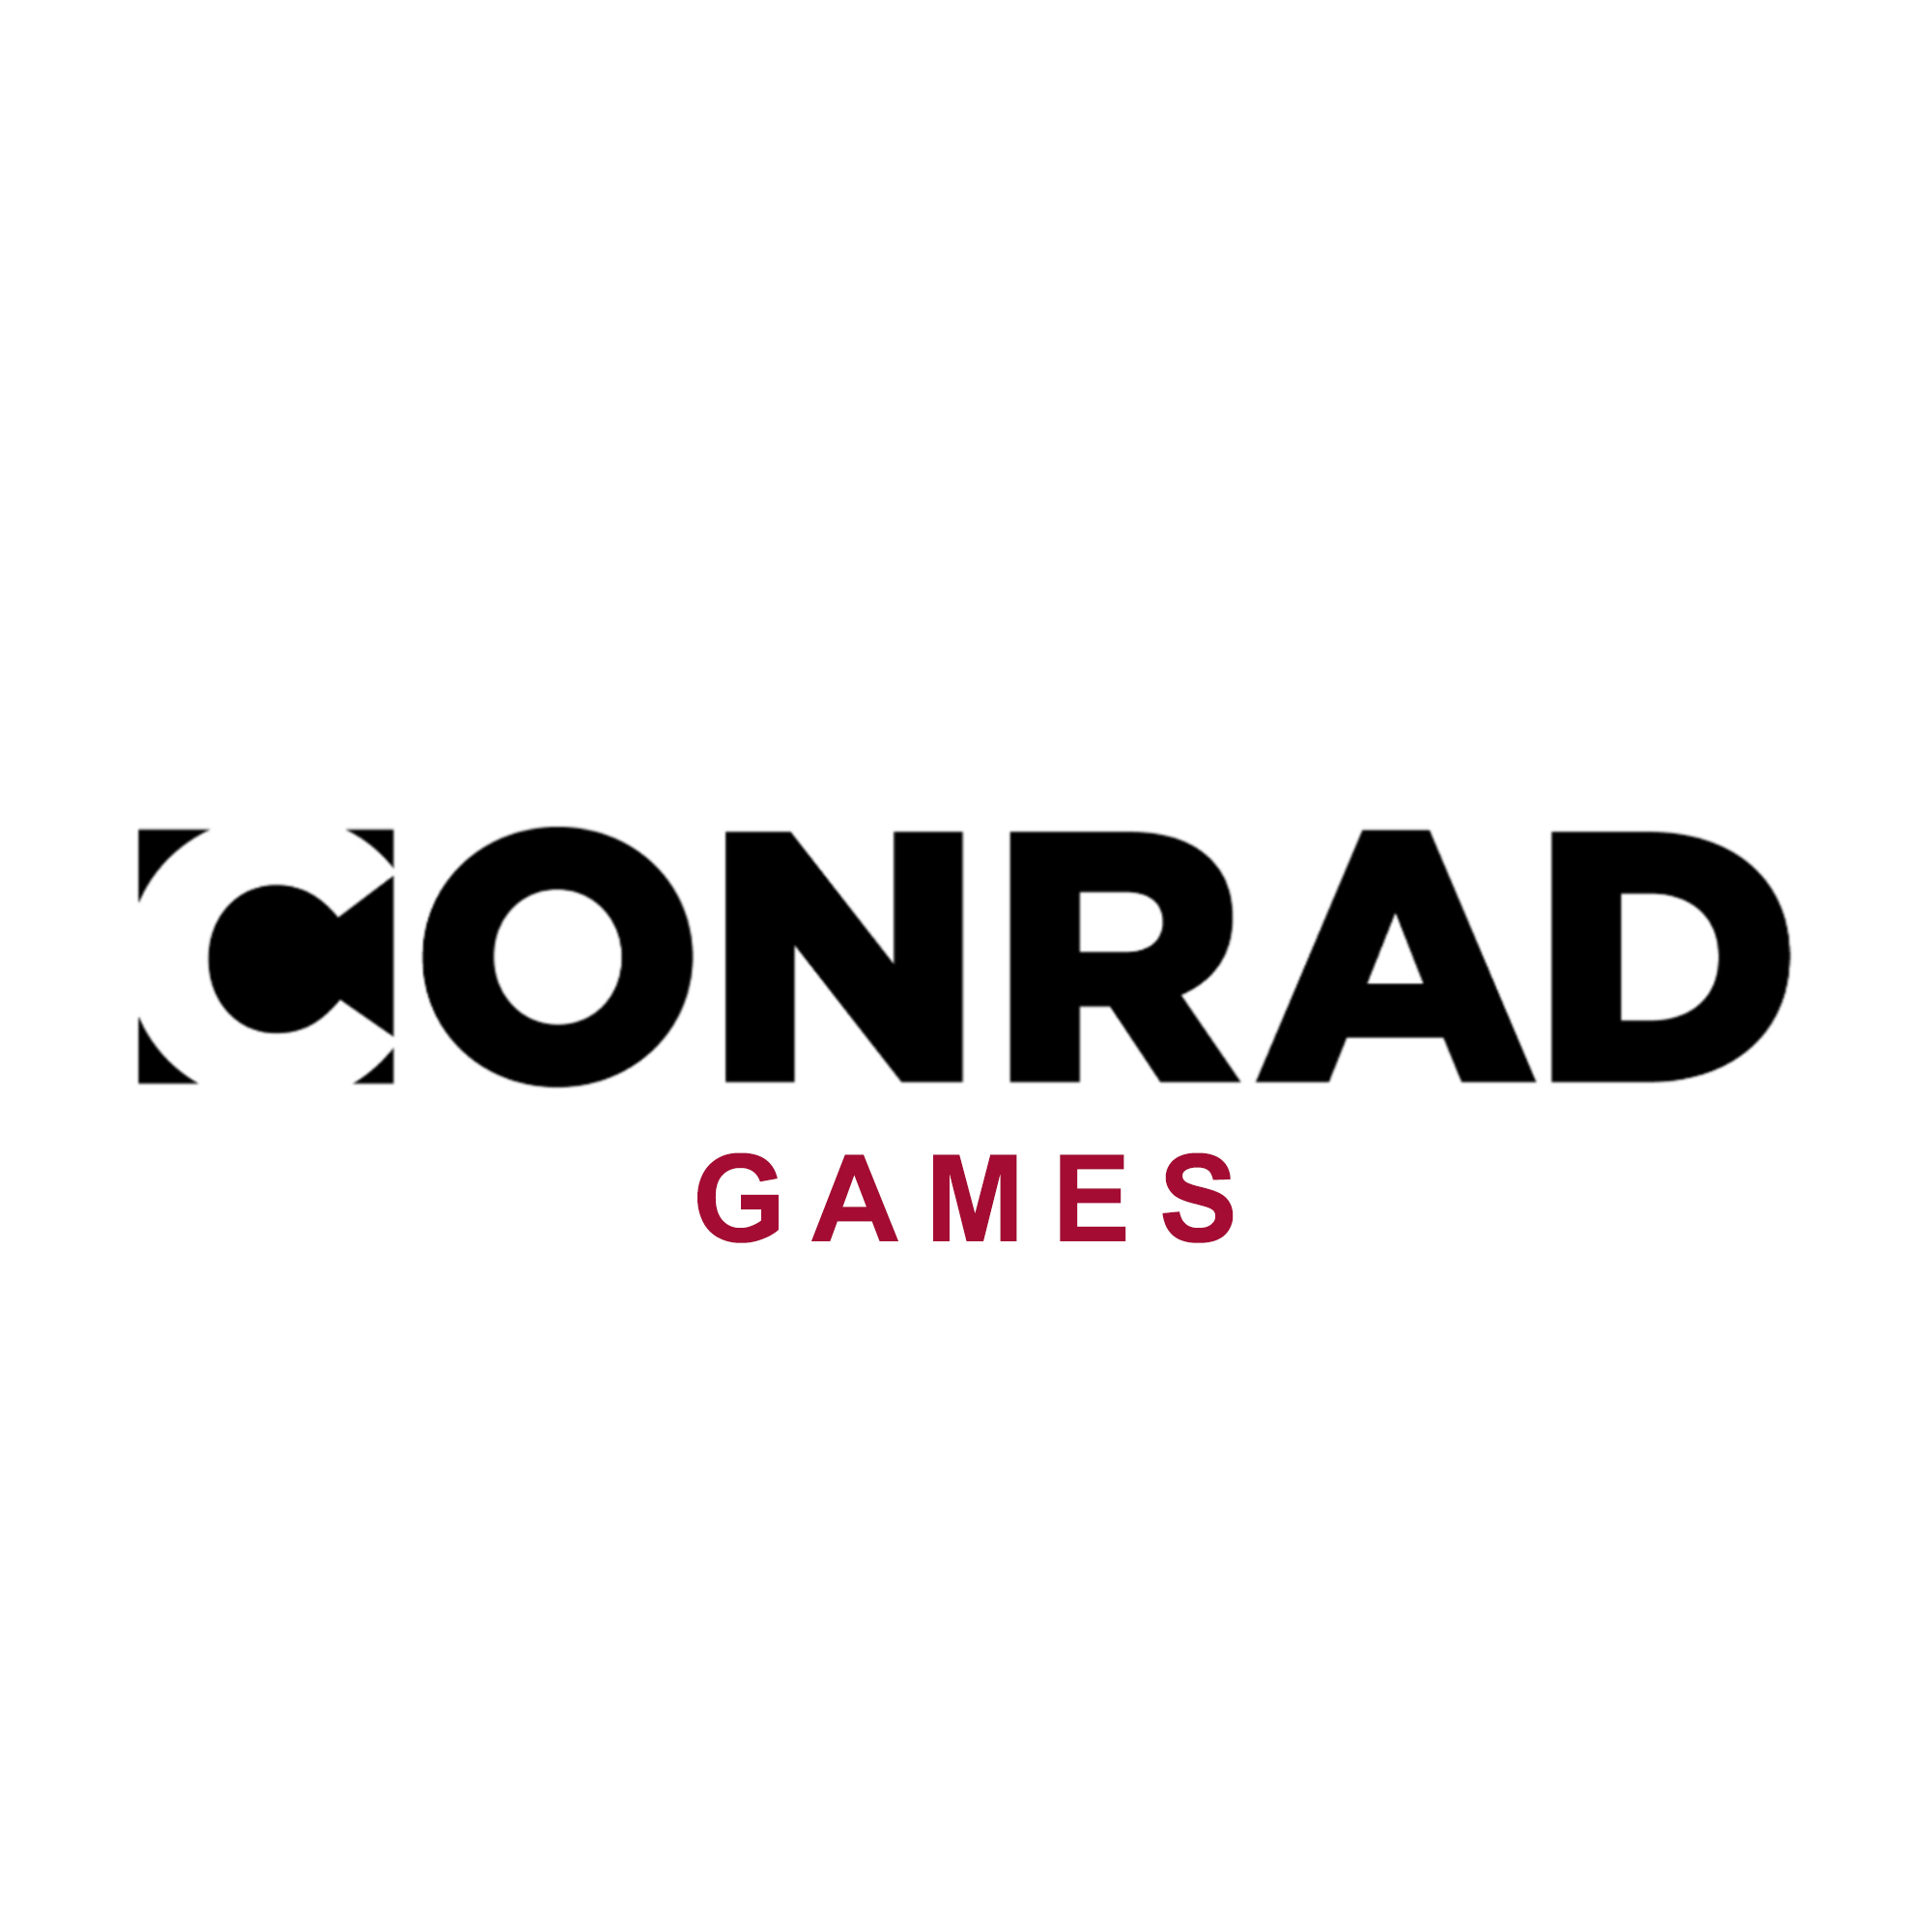 Conrad games logo